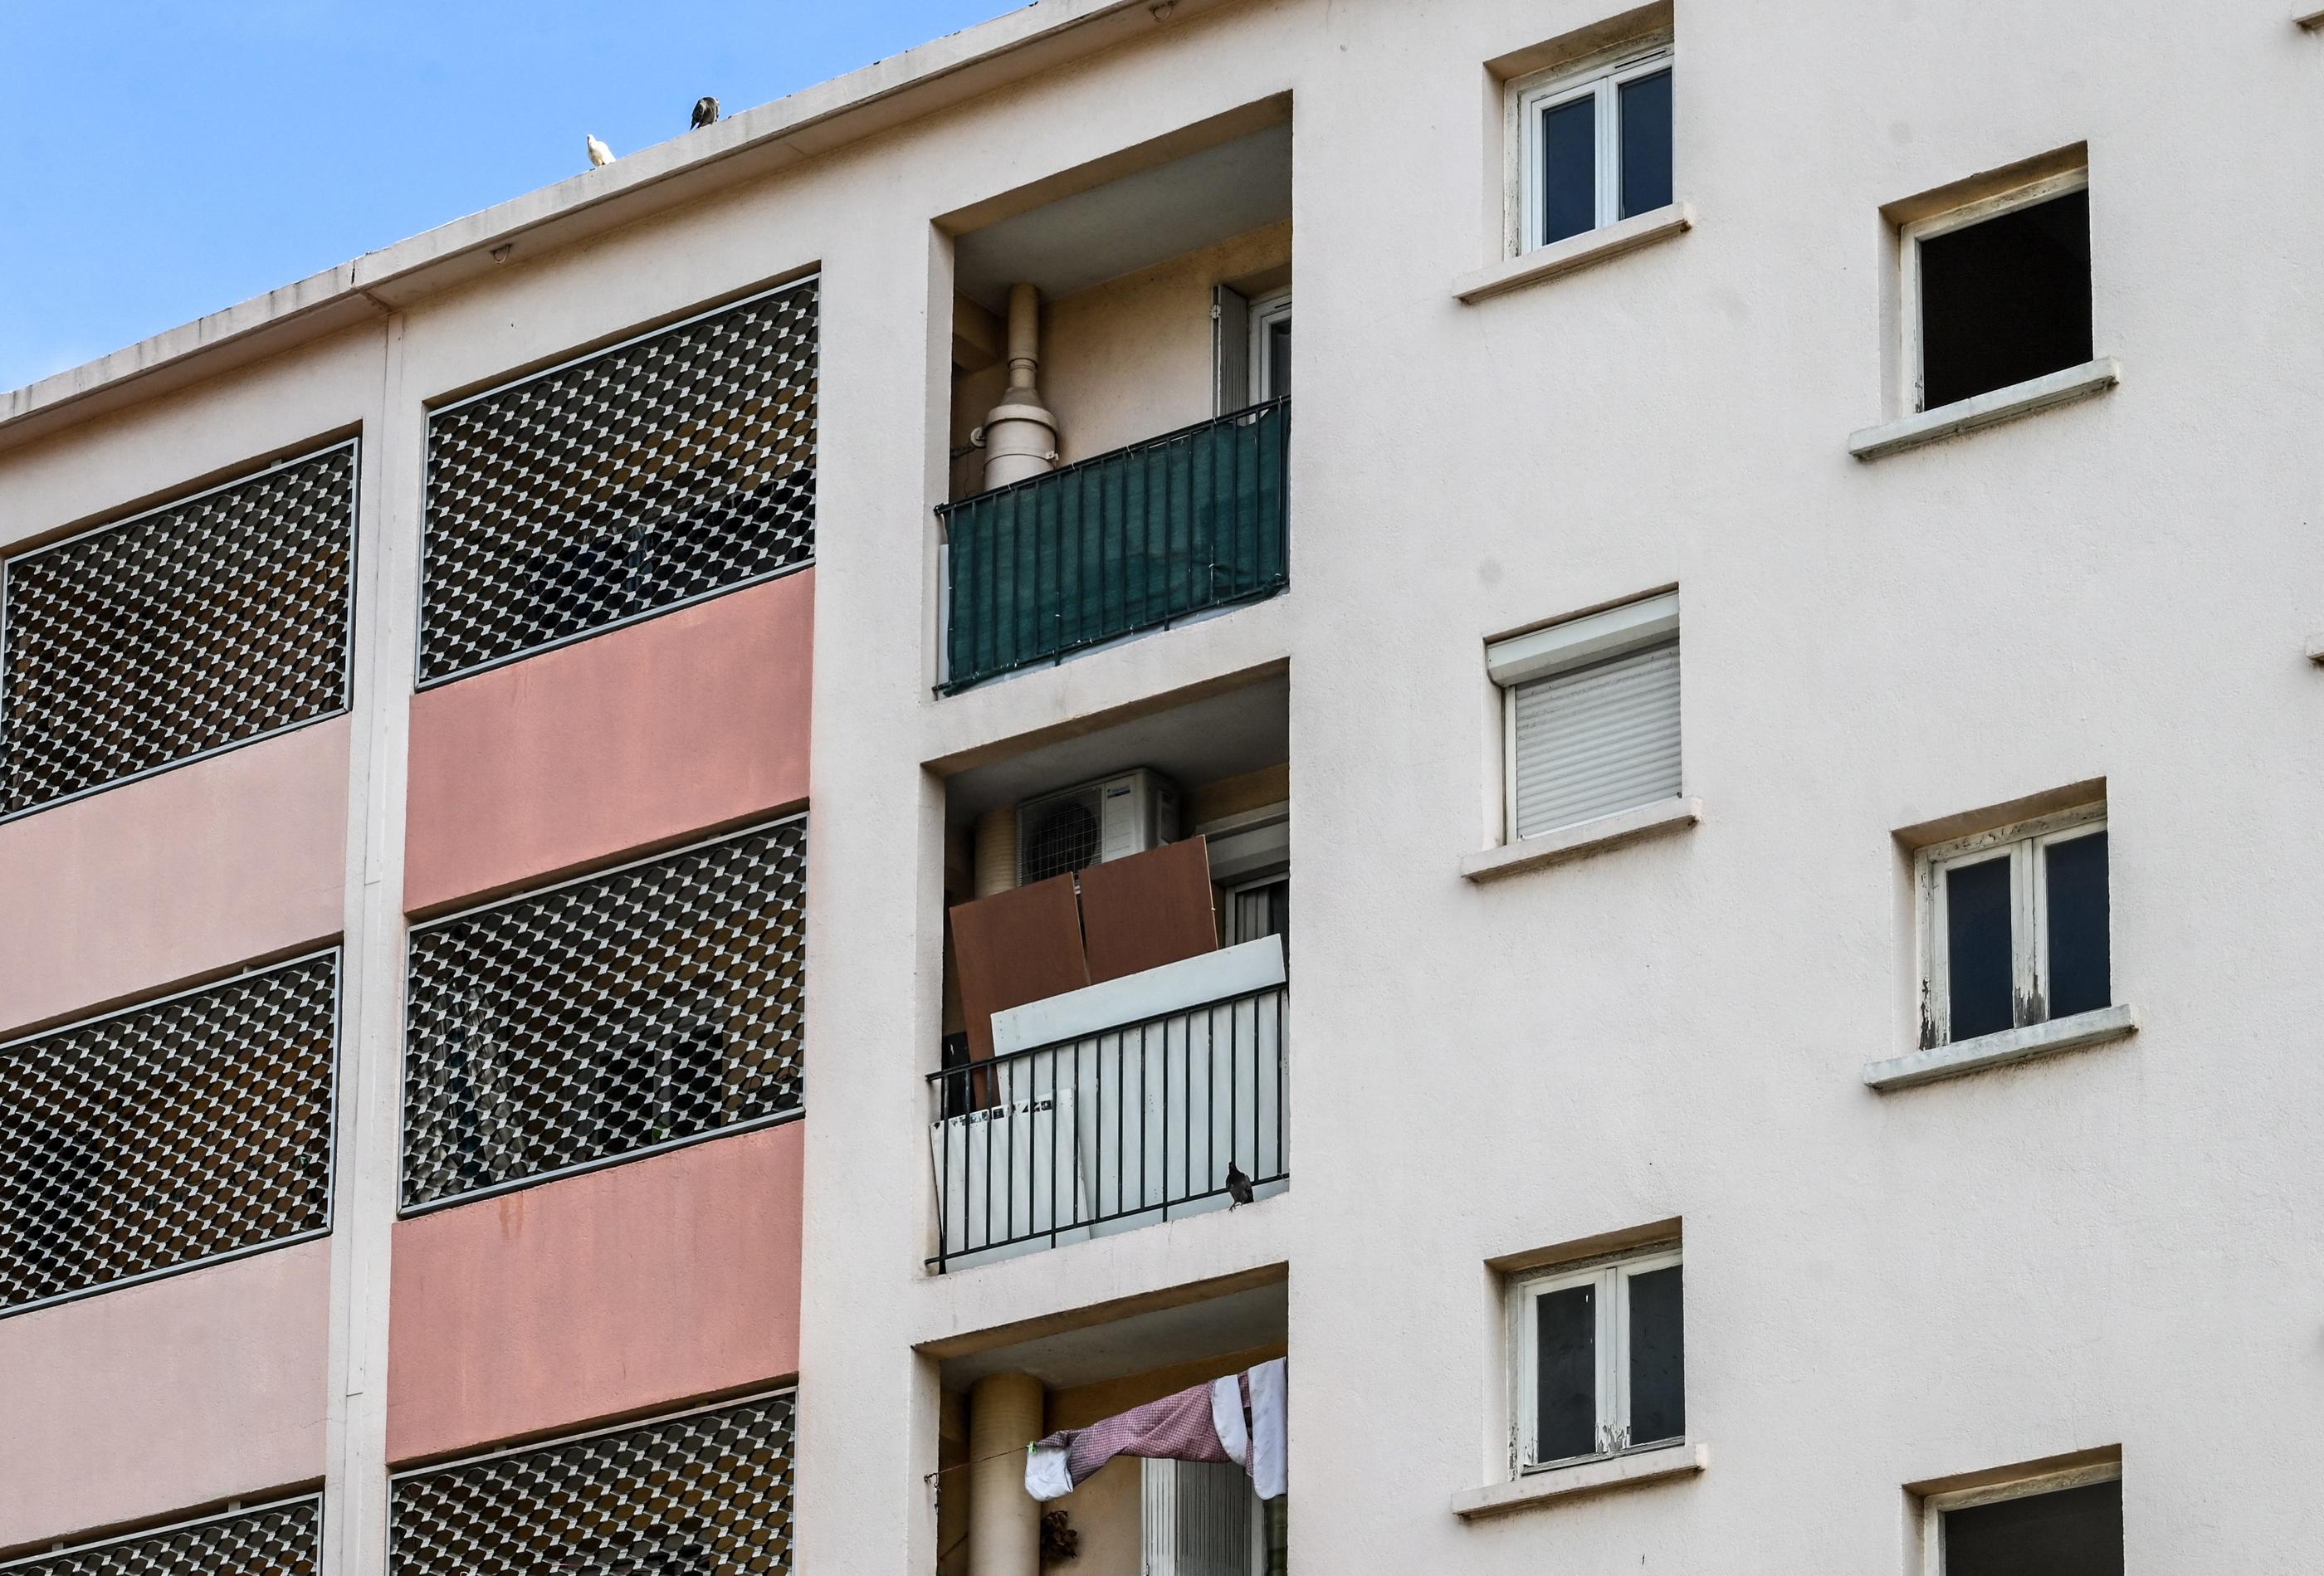 Un enfant de 7 ans a été retrouvé mort, en partie congelé, à l'avant dernier étage de cette résidence, à Perpignan. Son père a été placé en garde à vue. MAXPPP/L'INDEPENDANT/MICHEL CLEMENTZ